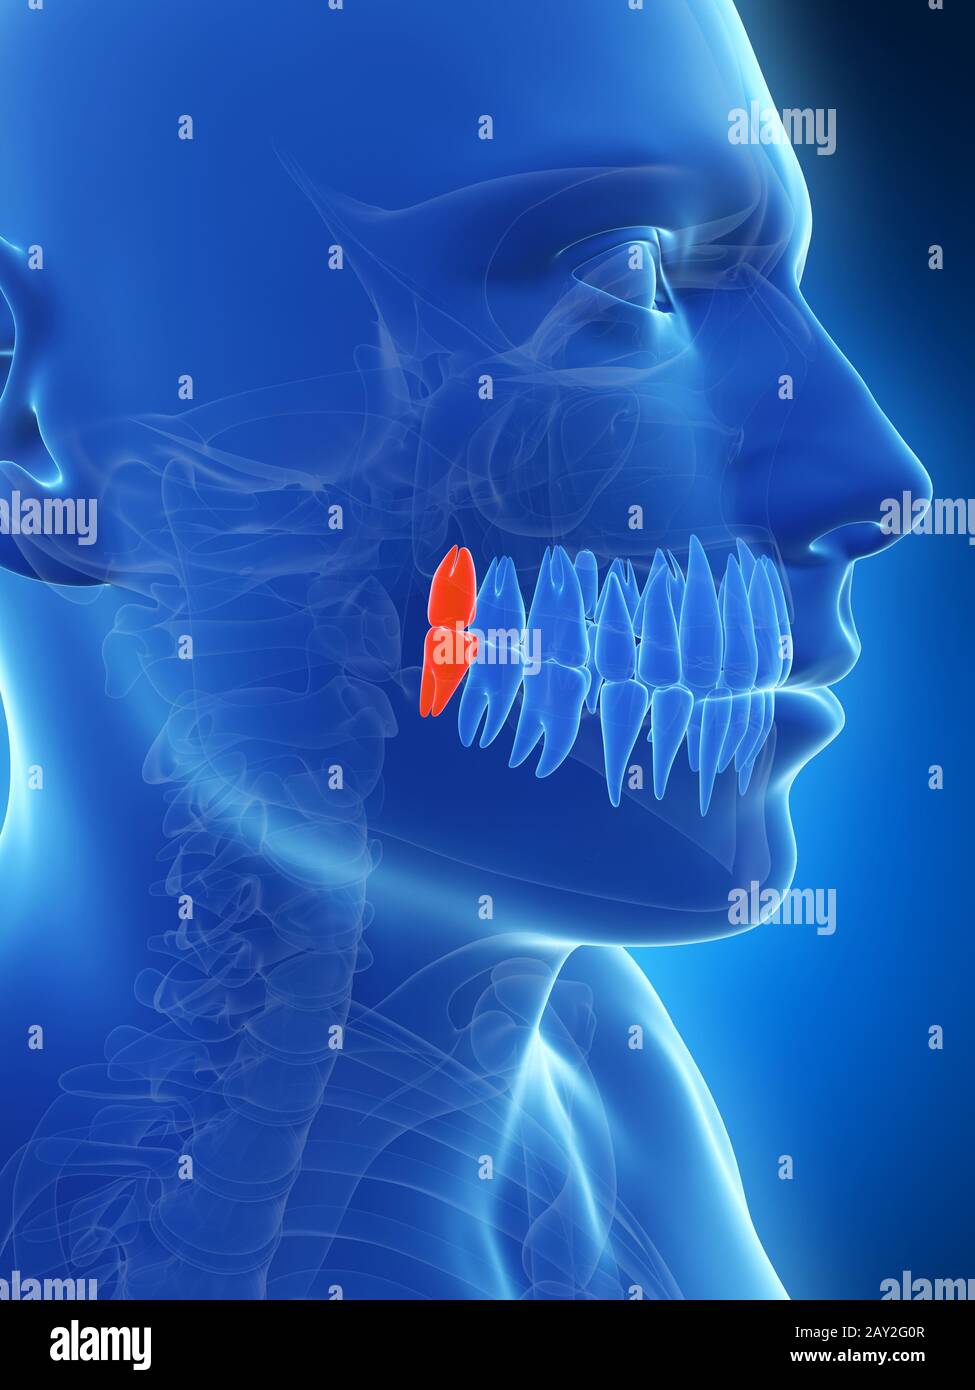 Illustration de rendu 3D les dents de sagesse Banque D'Images